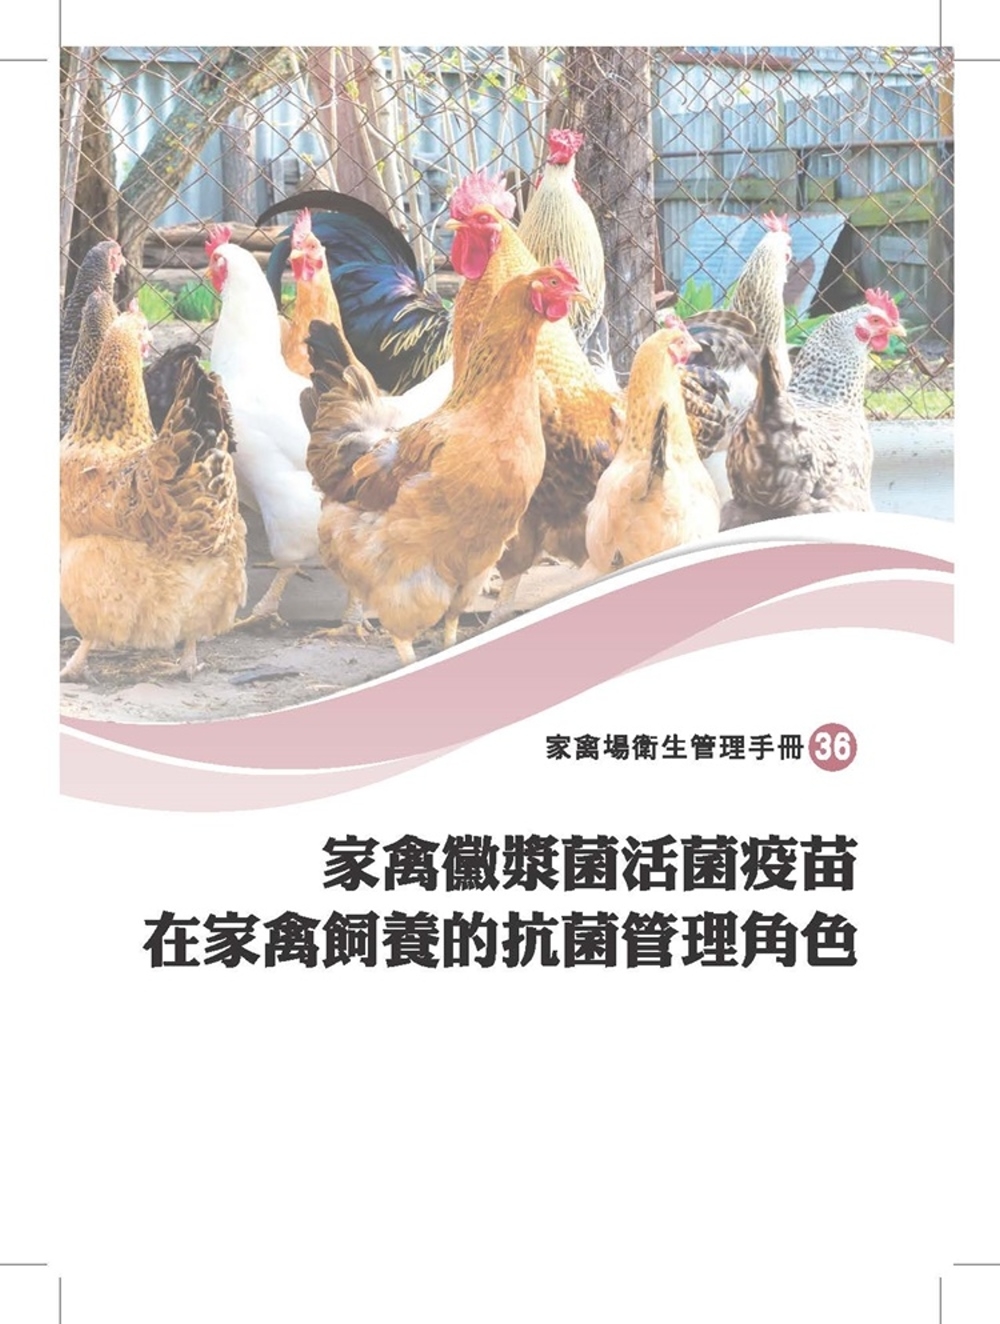 家禽黴漿菌活菌疫苗在家禽飼養的抗菌管理角色